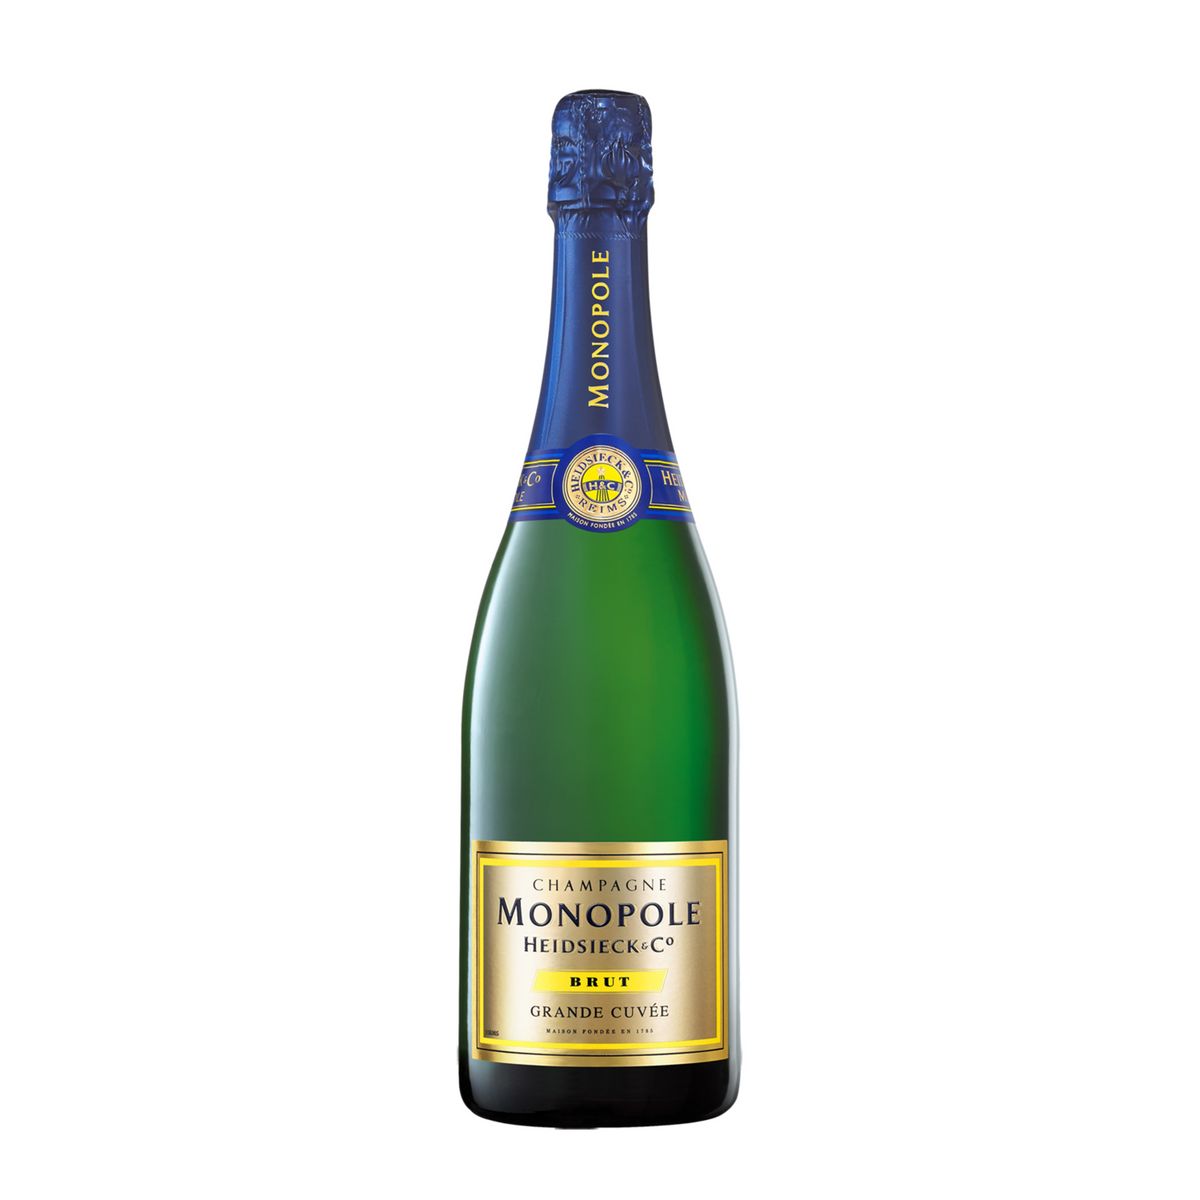 HEIDSIECK & CO MONOPOLE AOP Champagne Monopole grande cuvée brut 75cl